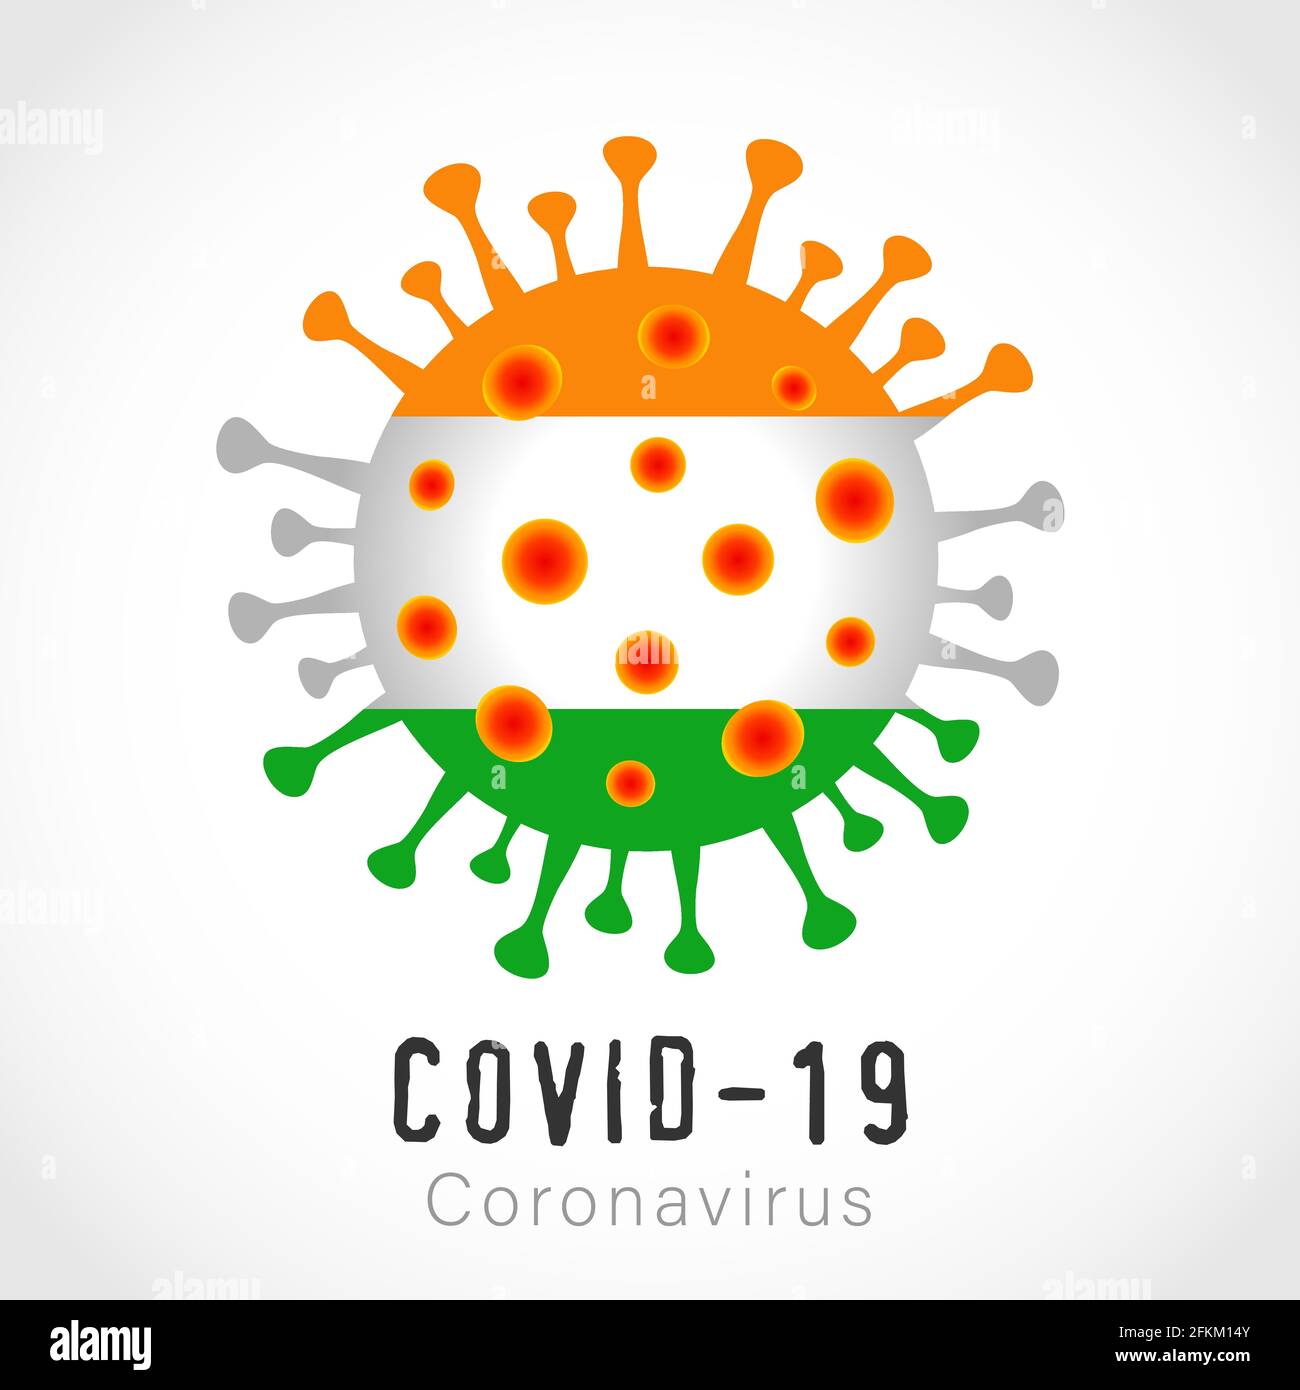 COVID-19 icona influenza Coronavirus con bandiera indiana. Concetto di quarantena, tempo di vaccinare banner - divaricamento sociale per la popolazione indiana Illustrazione Vettoriale